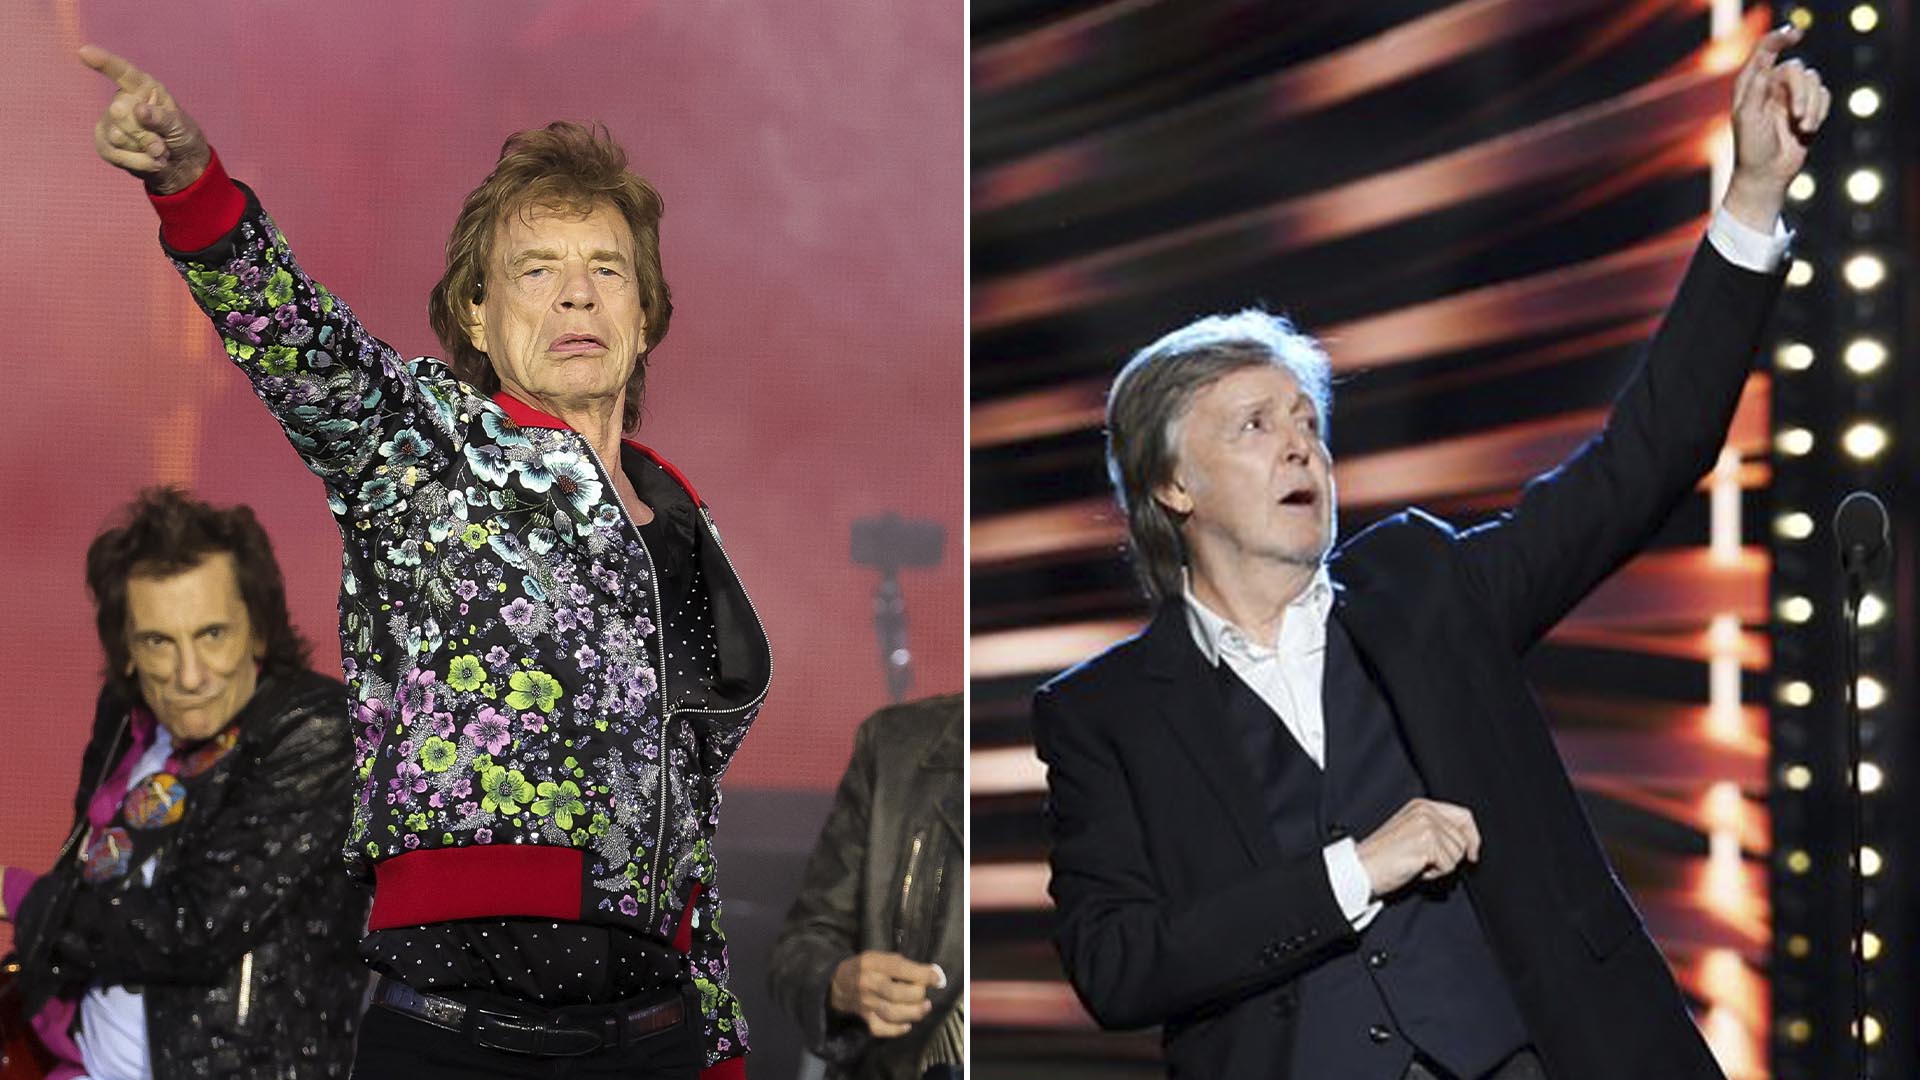 Los Rolling Stones grabaron una canción con Paul McCartney como bajista